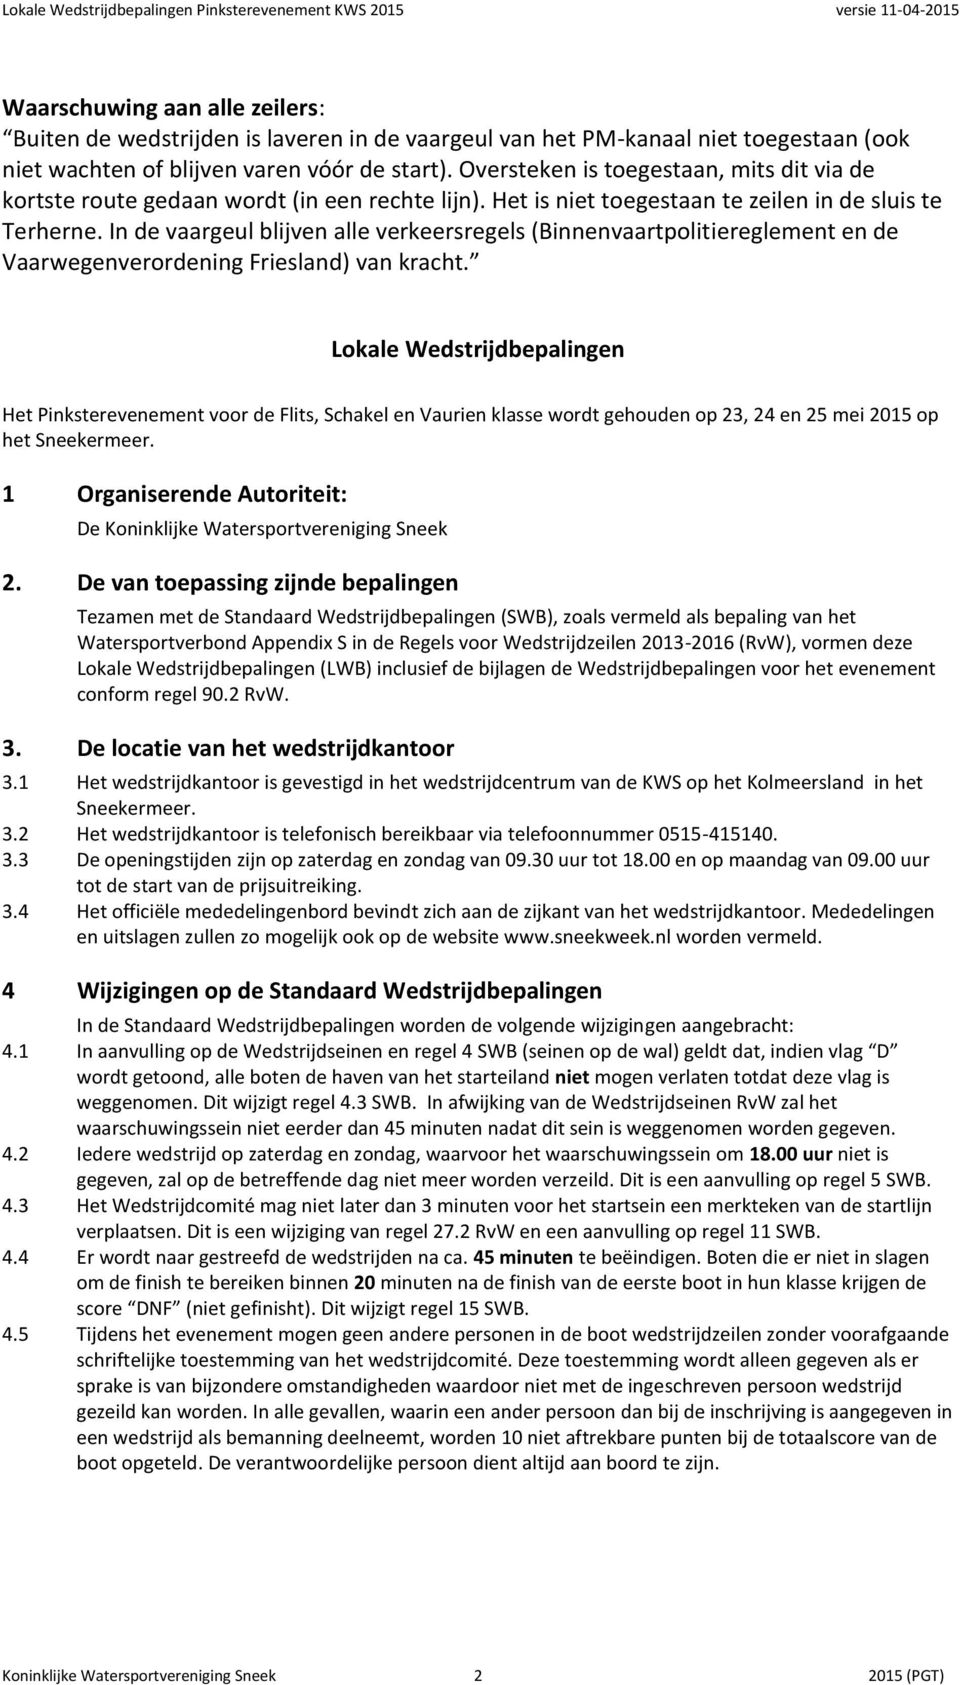 In de vaargeul blijven alle verkeersregels (Binnenvaartpolitiereglement en de Vaarwegenverordening Friesland) van kracht.